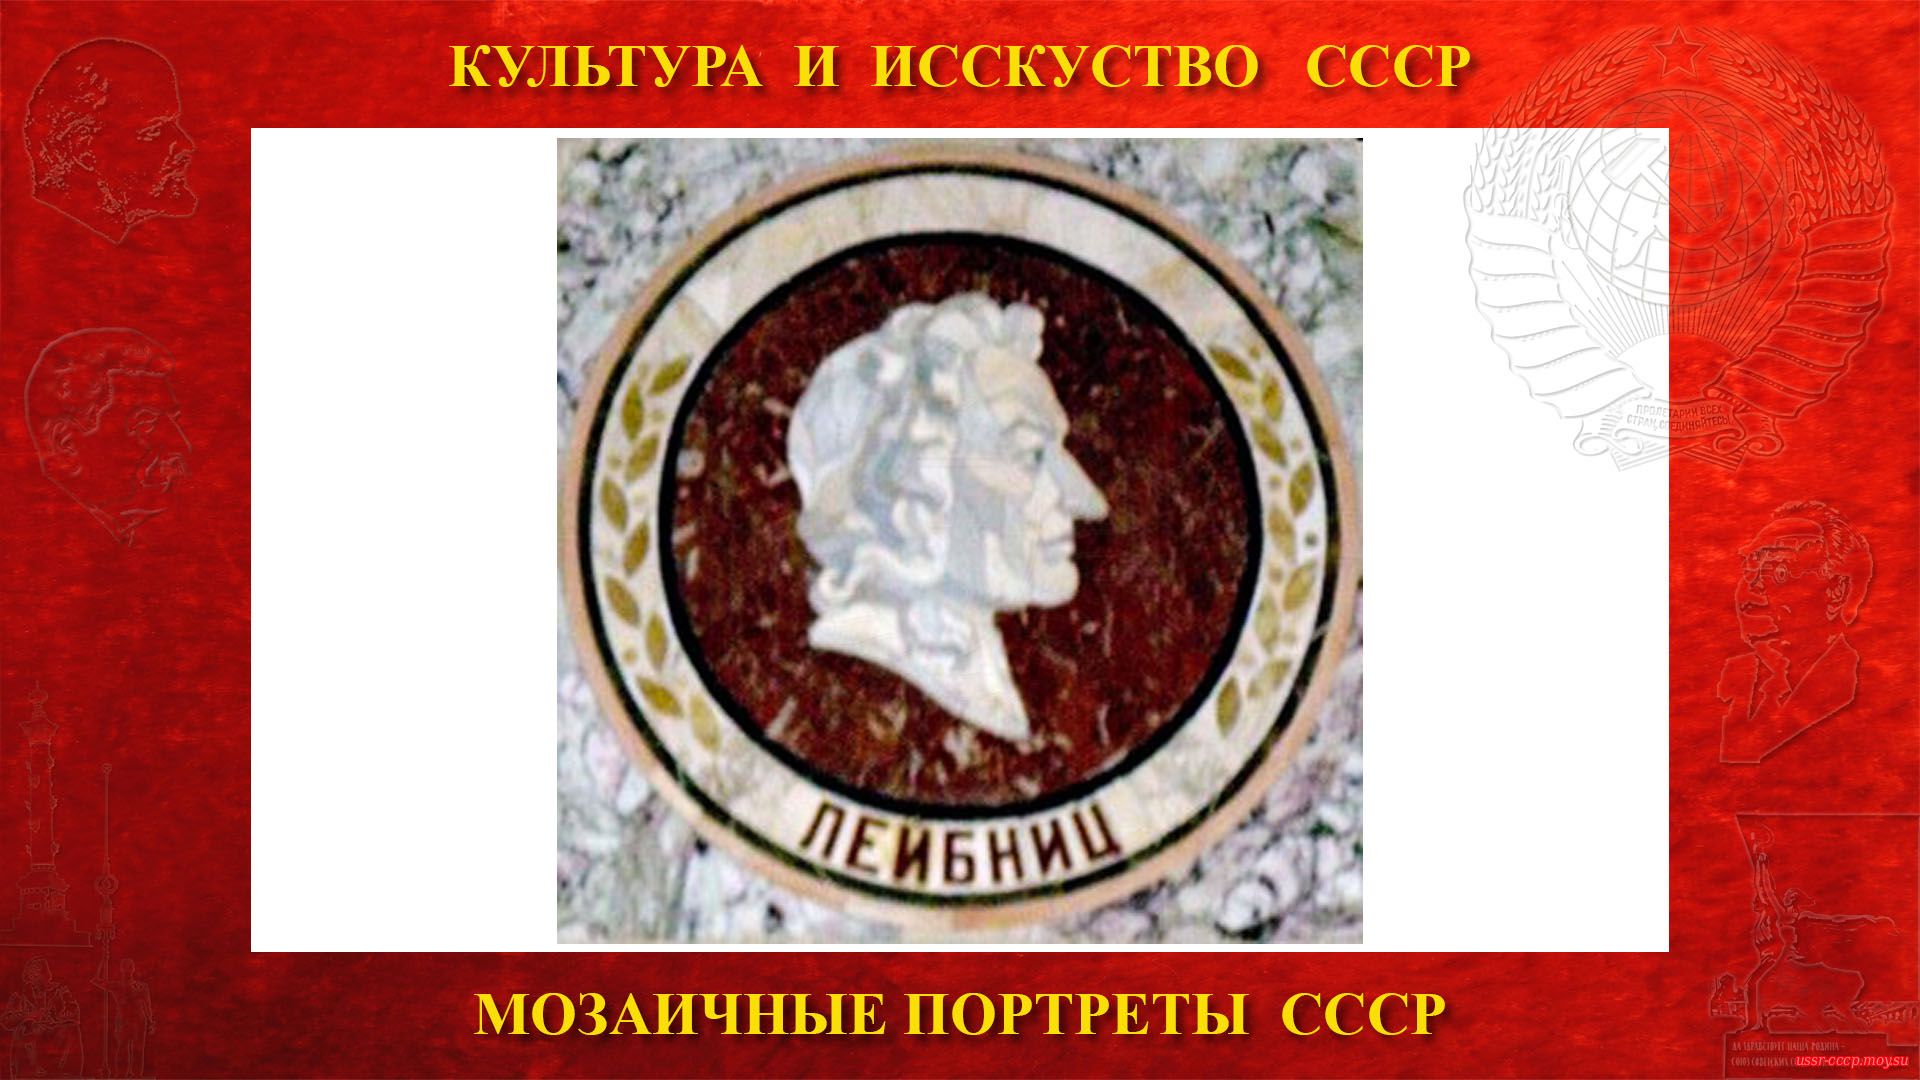 Мозаичный портрет Лейбницу Г.В. на Ленинских горах в ГЗ МГУ (Москва 1953) (повествование)